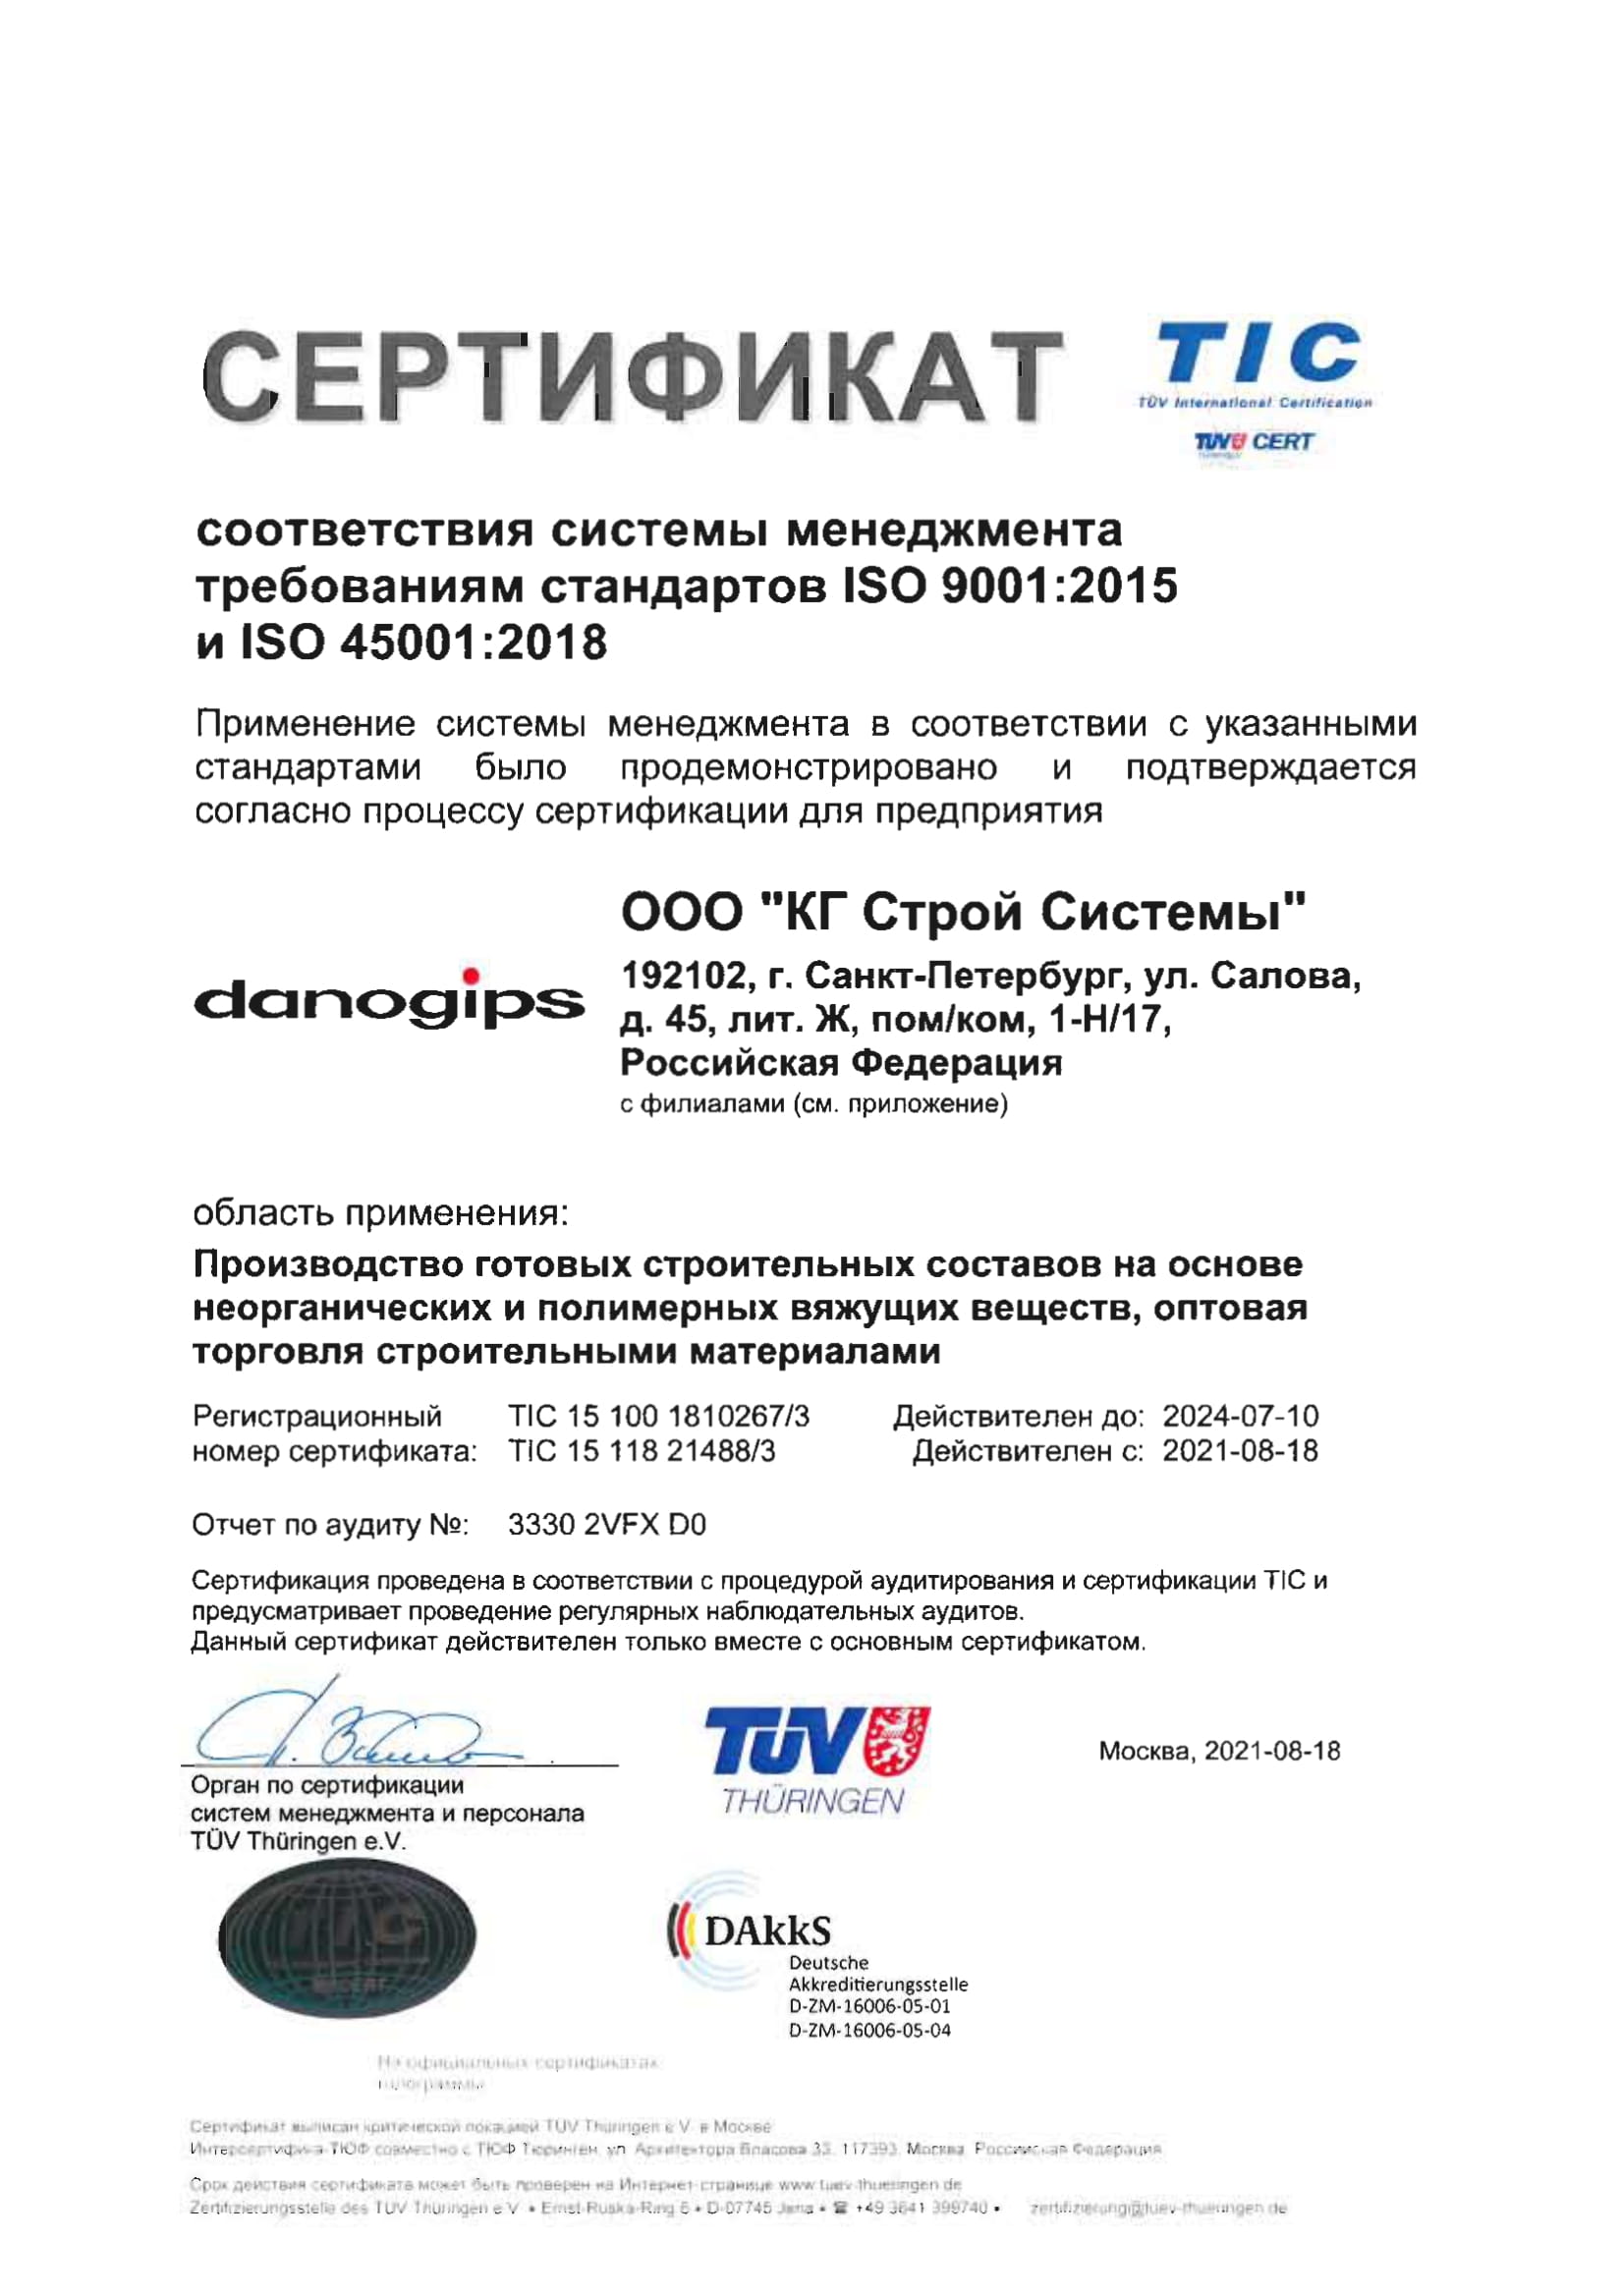 Сертификат ISO 9001, 45001 (КГ Строй Системы, рус,англ)